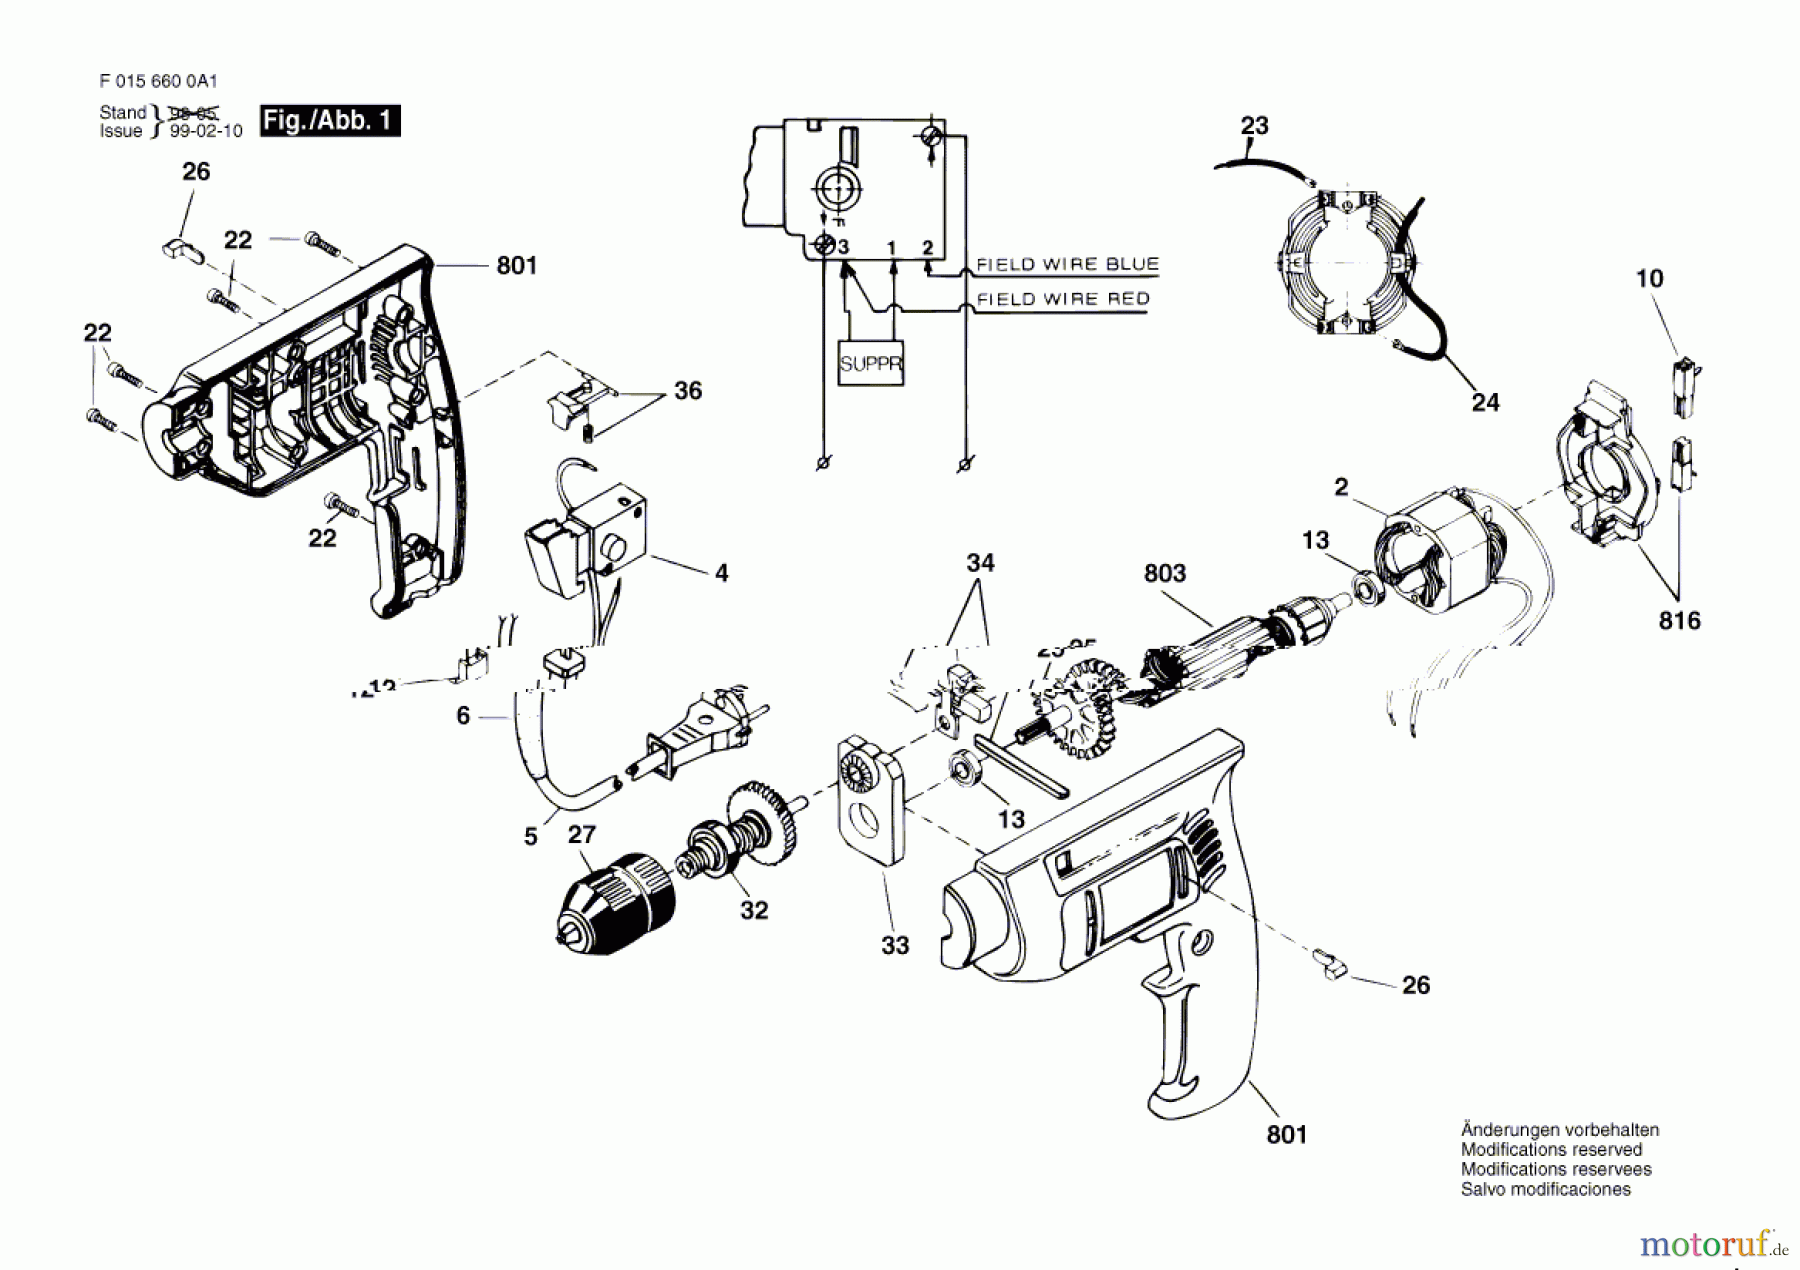  Bosch Werkzeug Bohrmaschine 6600 H1 Seite 1